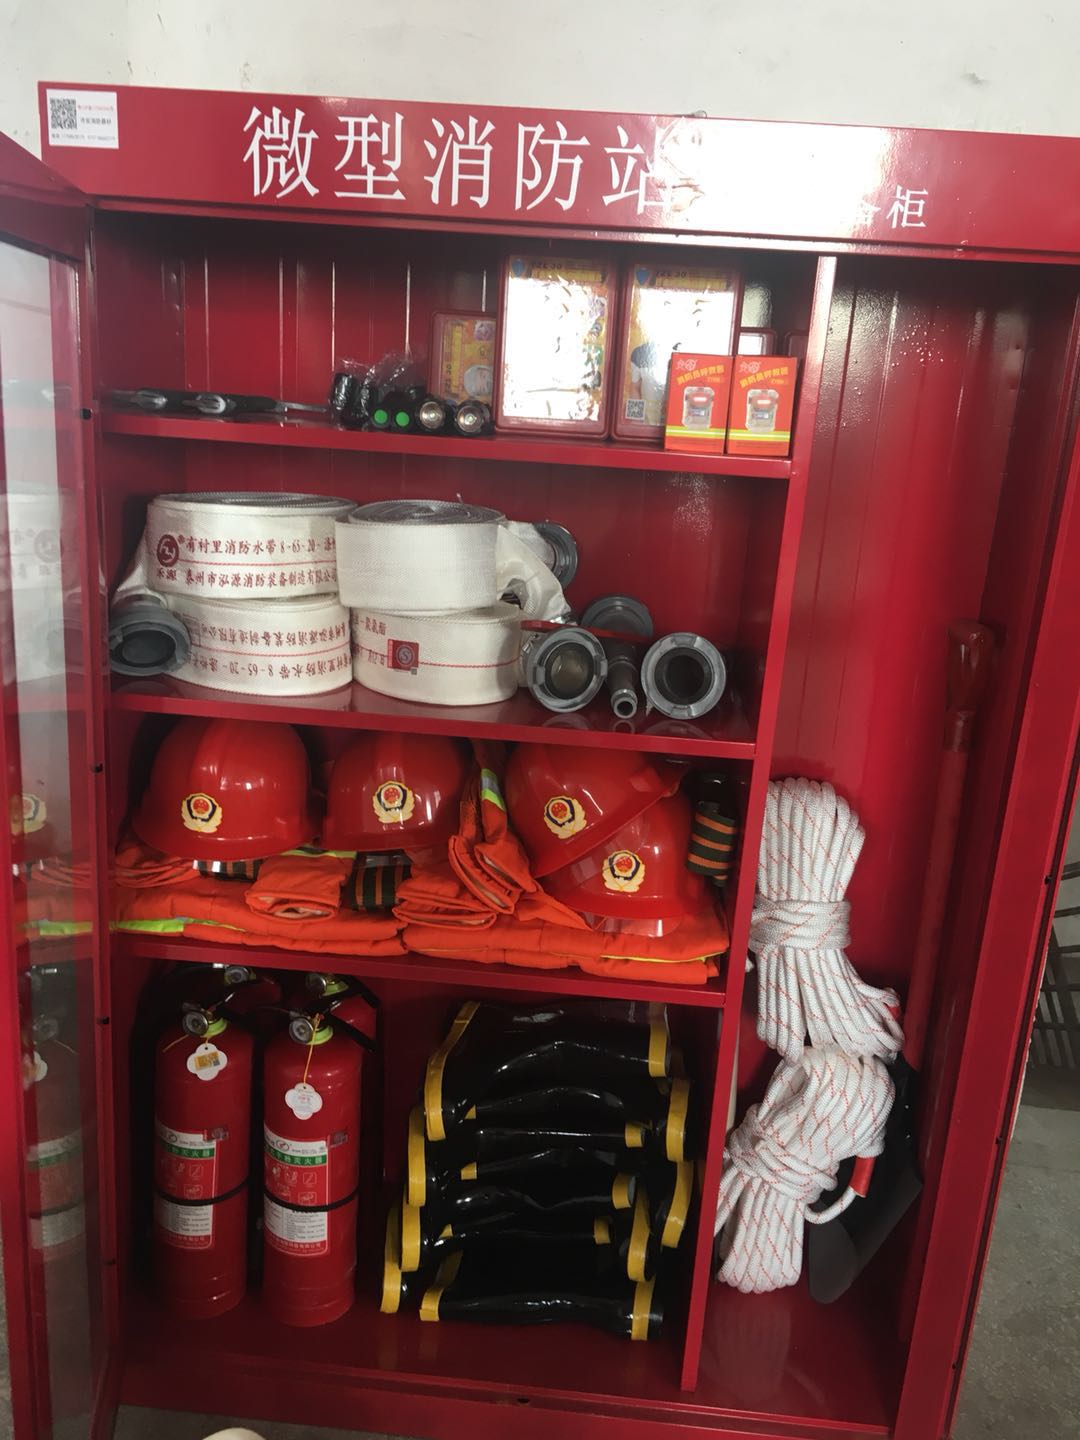 佛山市顺德区龙江乐从勒流工厂企业微型消防站配备哪些消防器材 工厂微型消防站